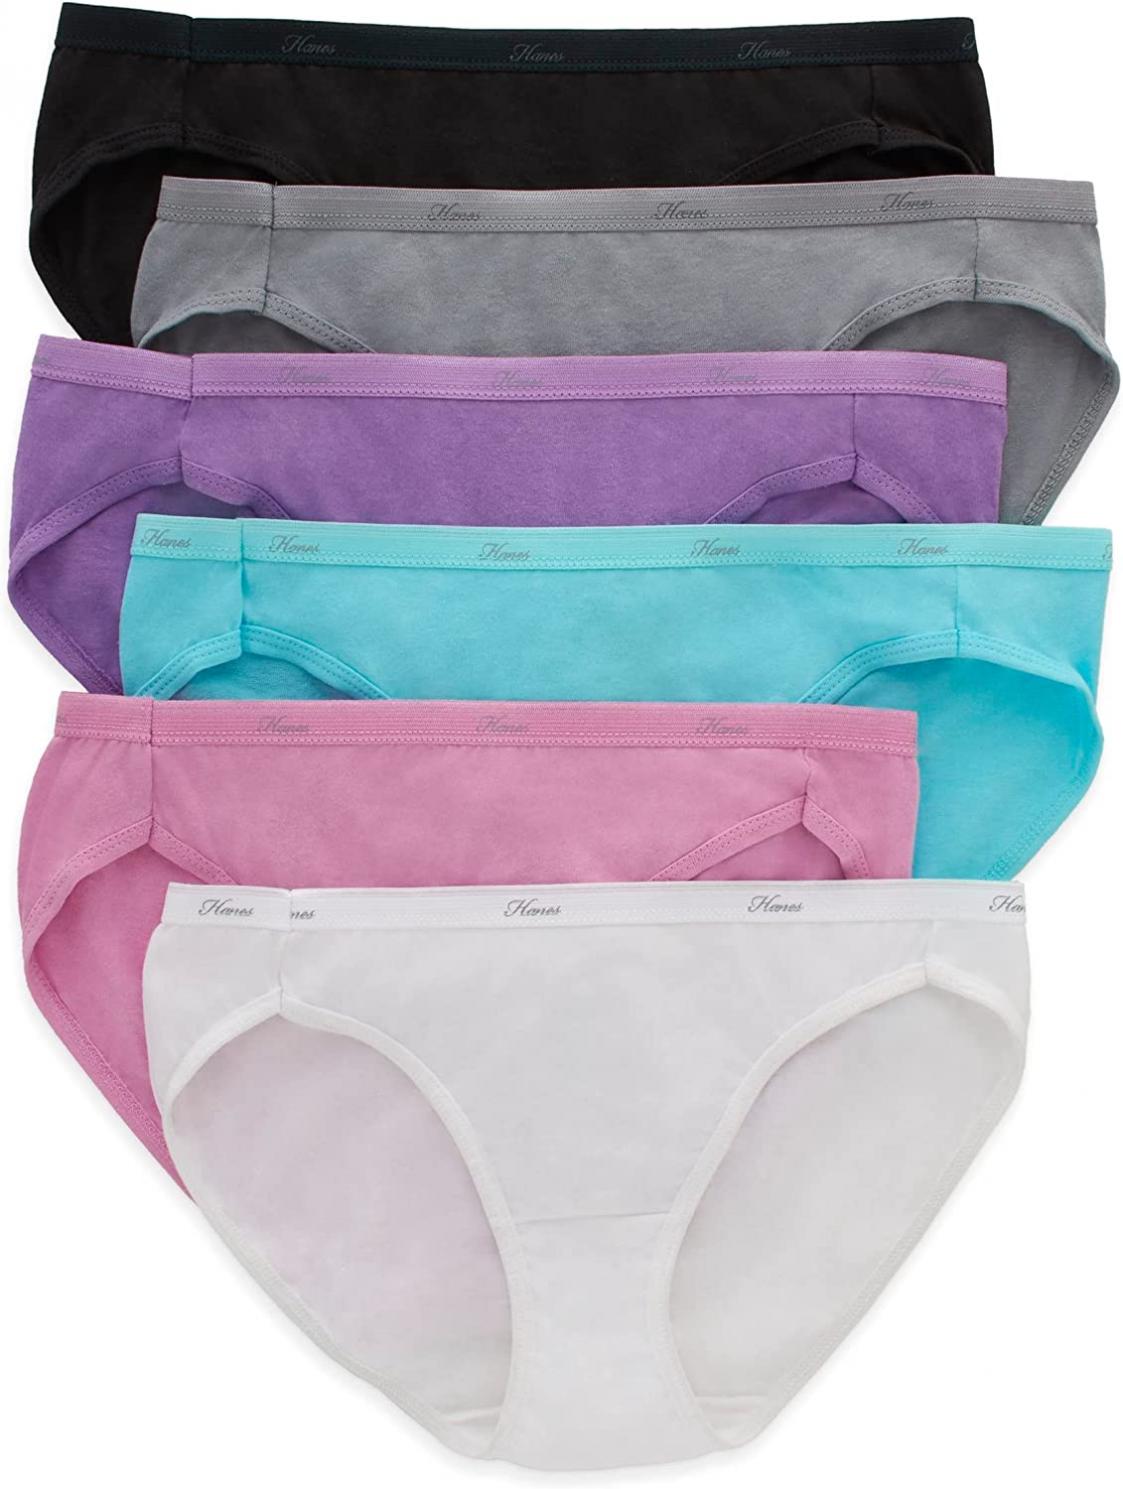 Hanes Women's Bikini Panties Pack, Moisture-Wicking Cotton Bikini Underwear (Colors May Vary)